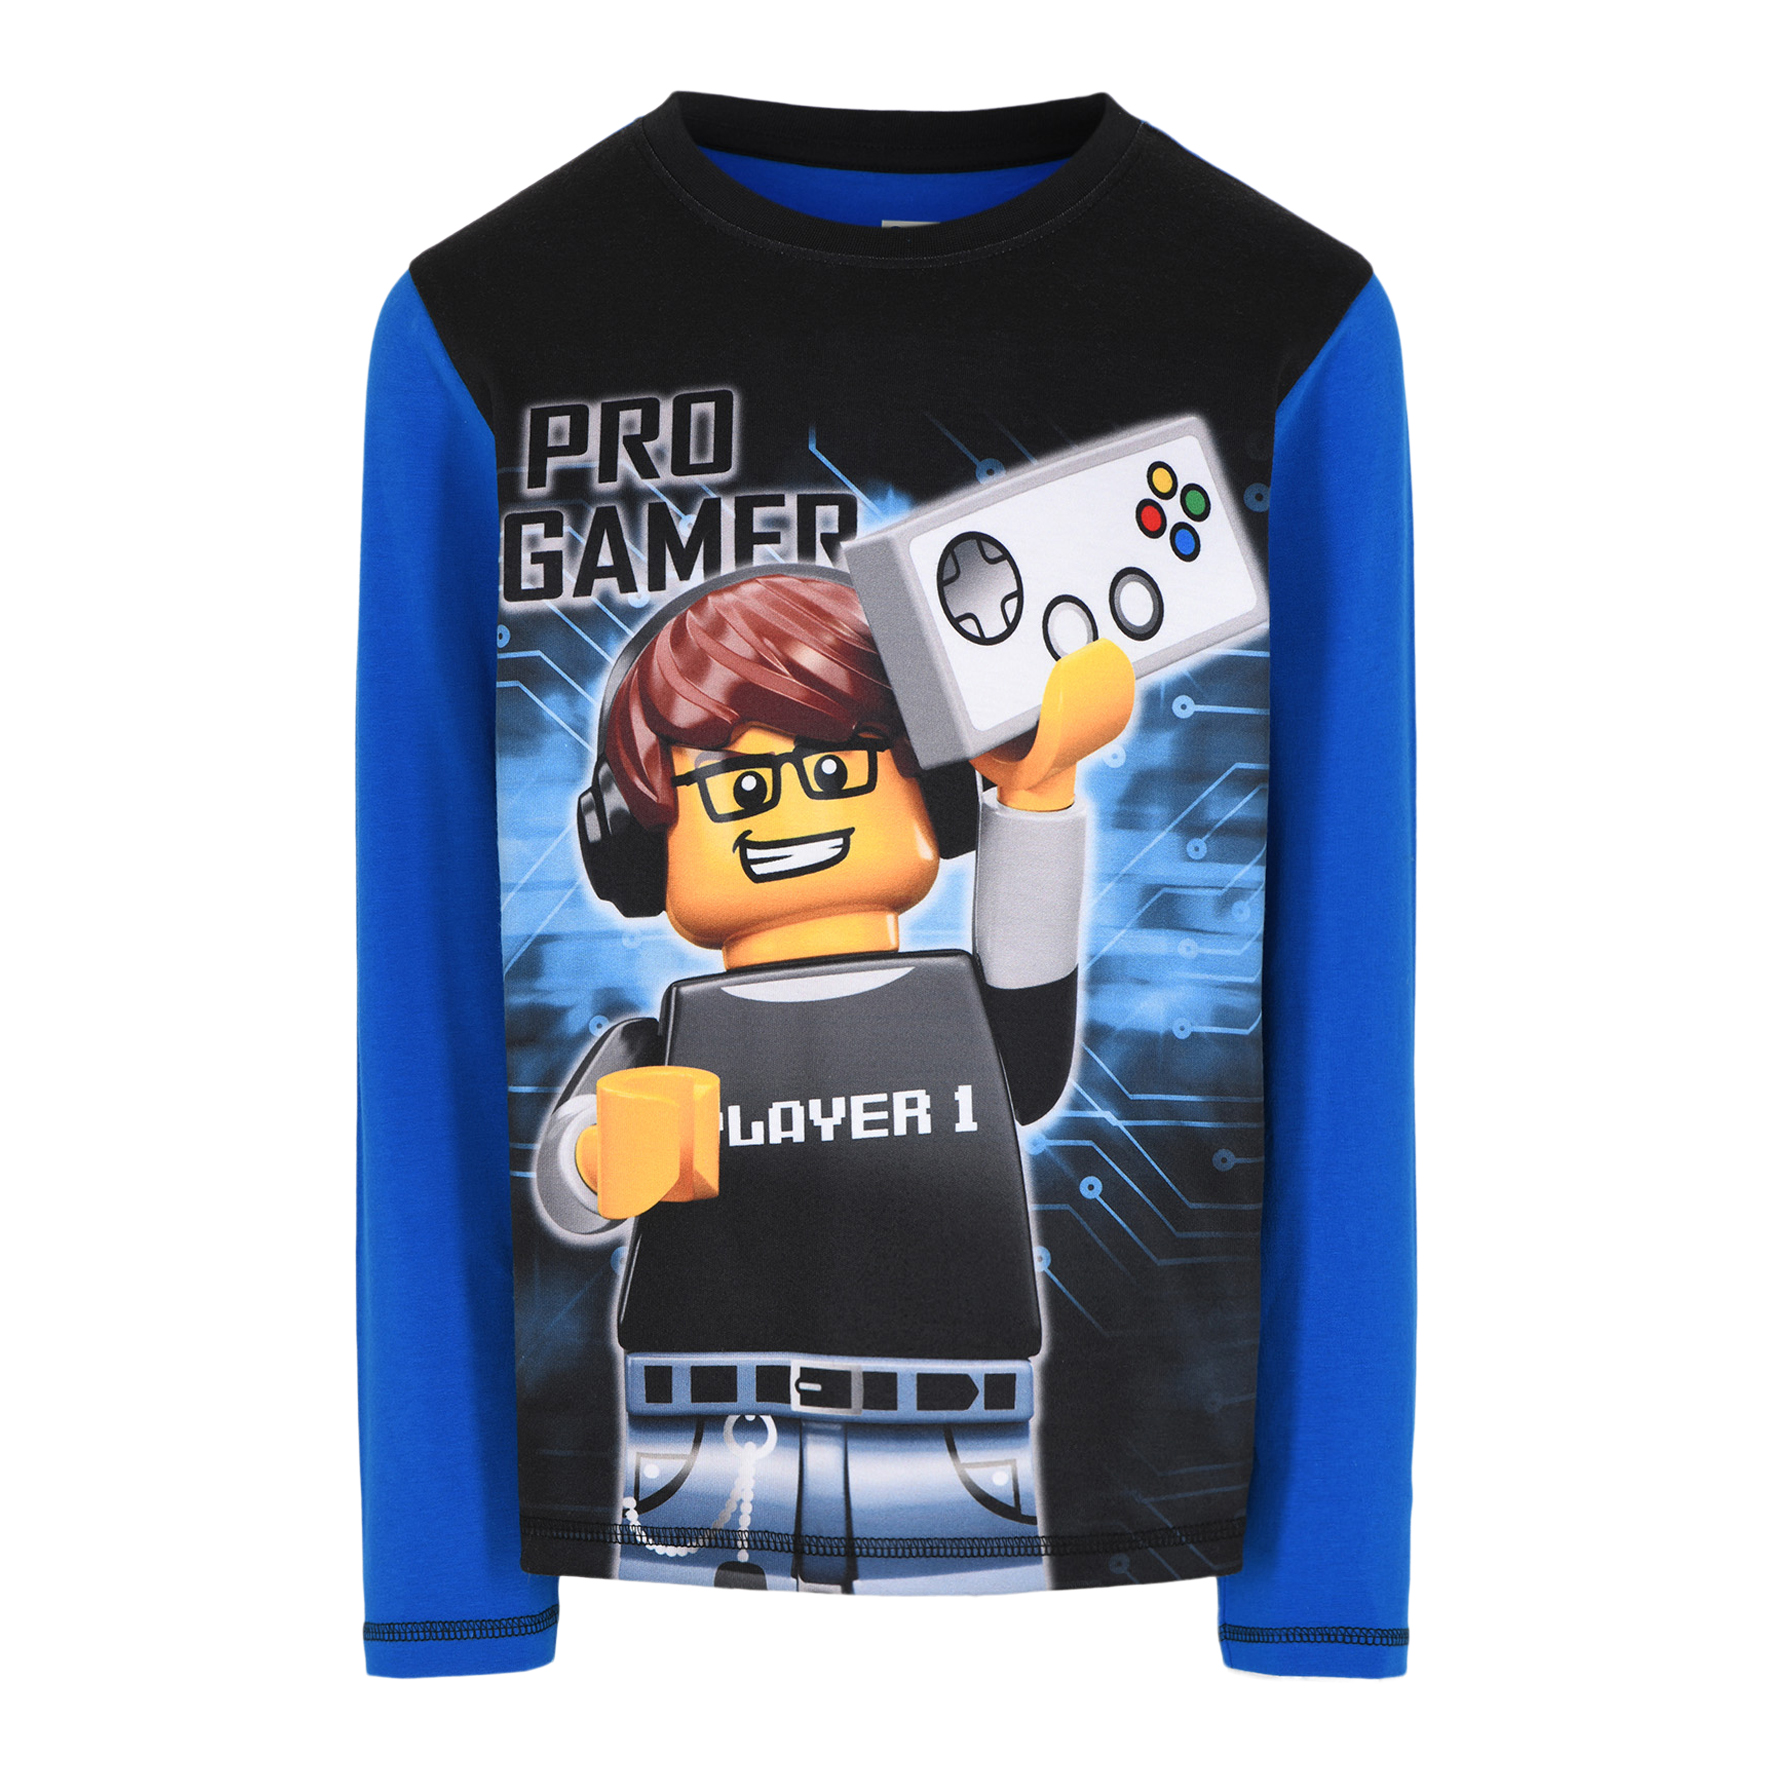 Lego Ninjago pyjama pro gamer